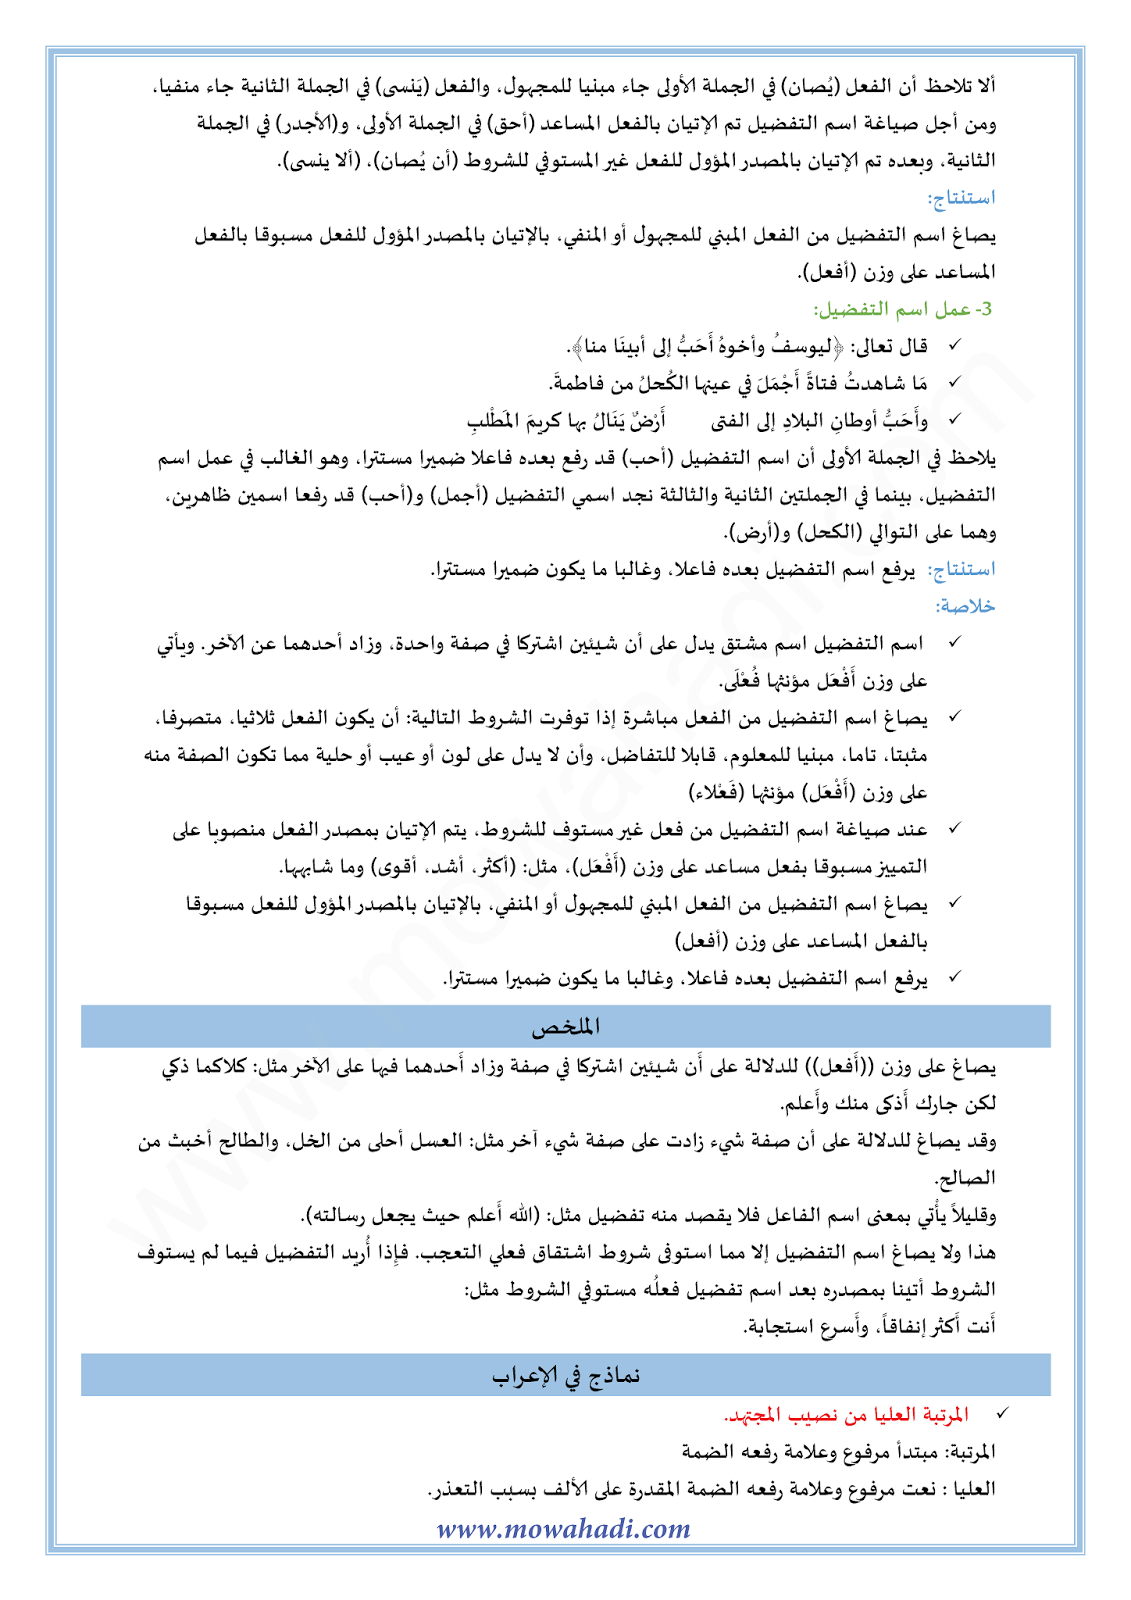 الدرس اللغوي اسم التفضيل للسنة الثالثة اعدادي في مادة اللغة العربية 8-cours-dars-loghawi3_002